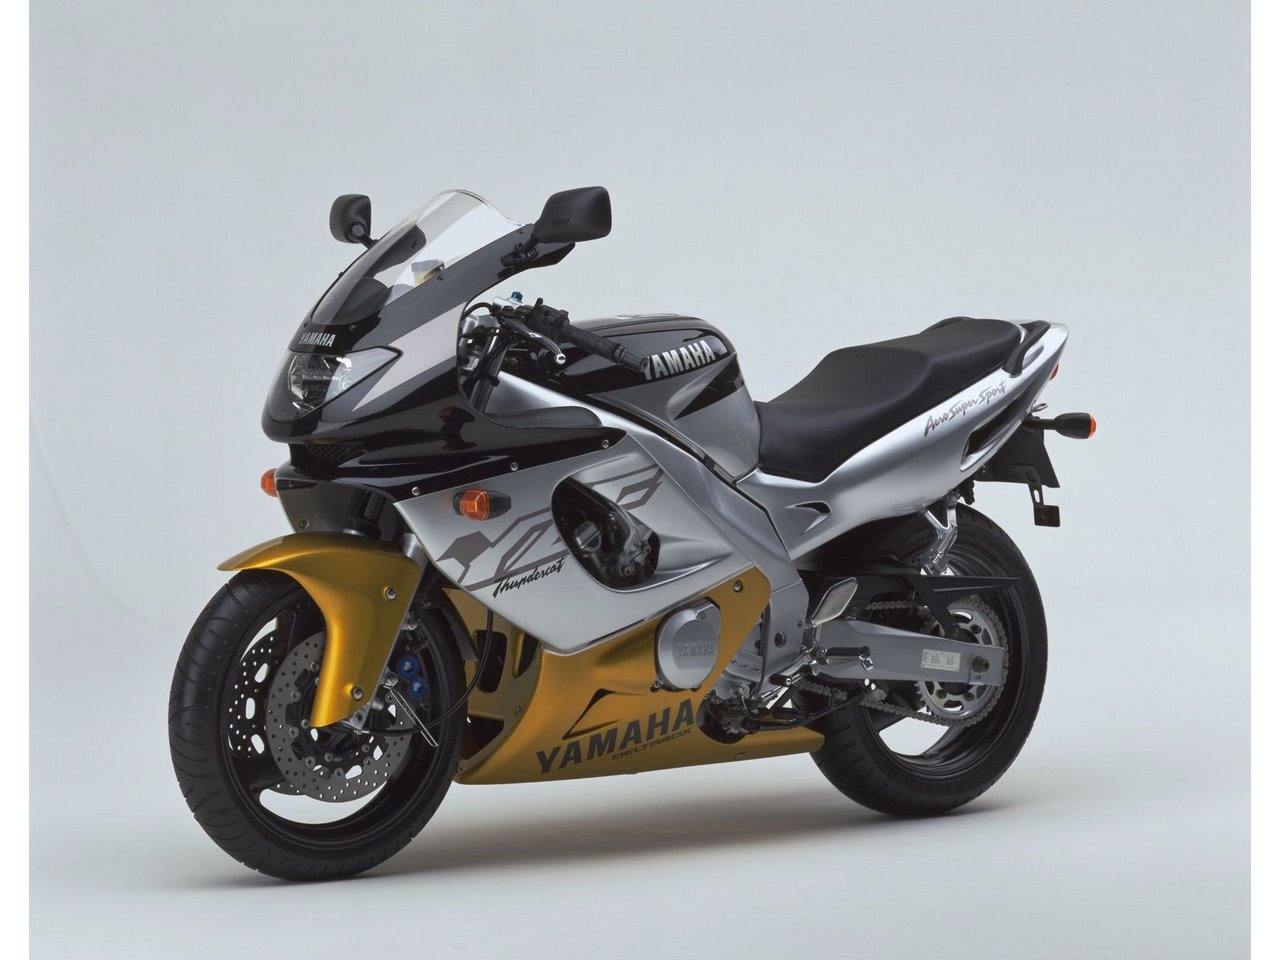 Yzf 600 r thundercat — мотоэнциклопедия